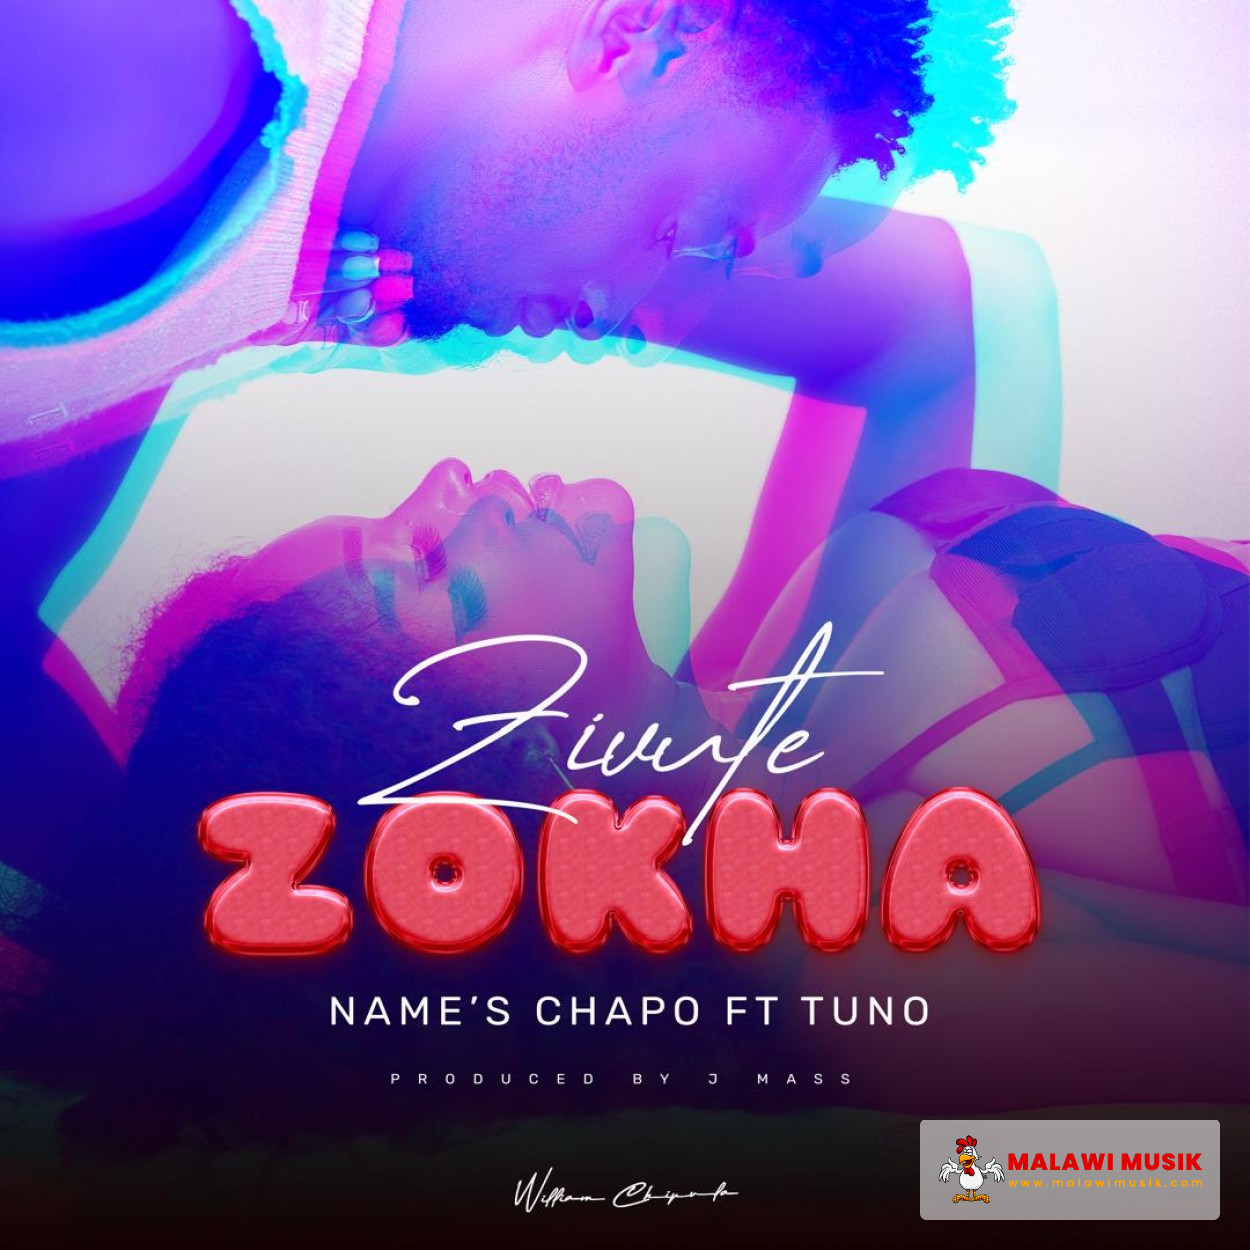 Names Chapo - Zivute Zokha ft Tuno (Prod. J Mass)